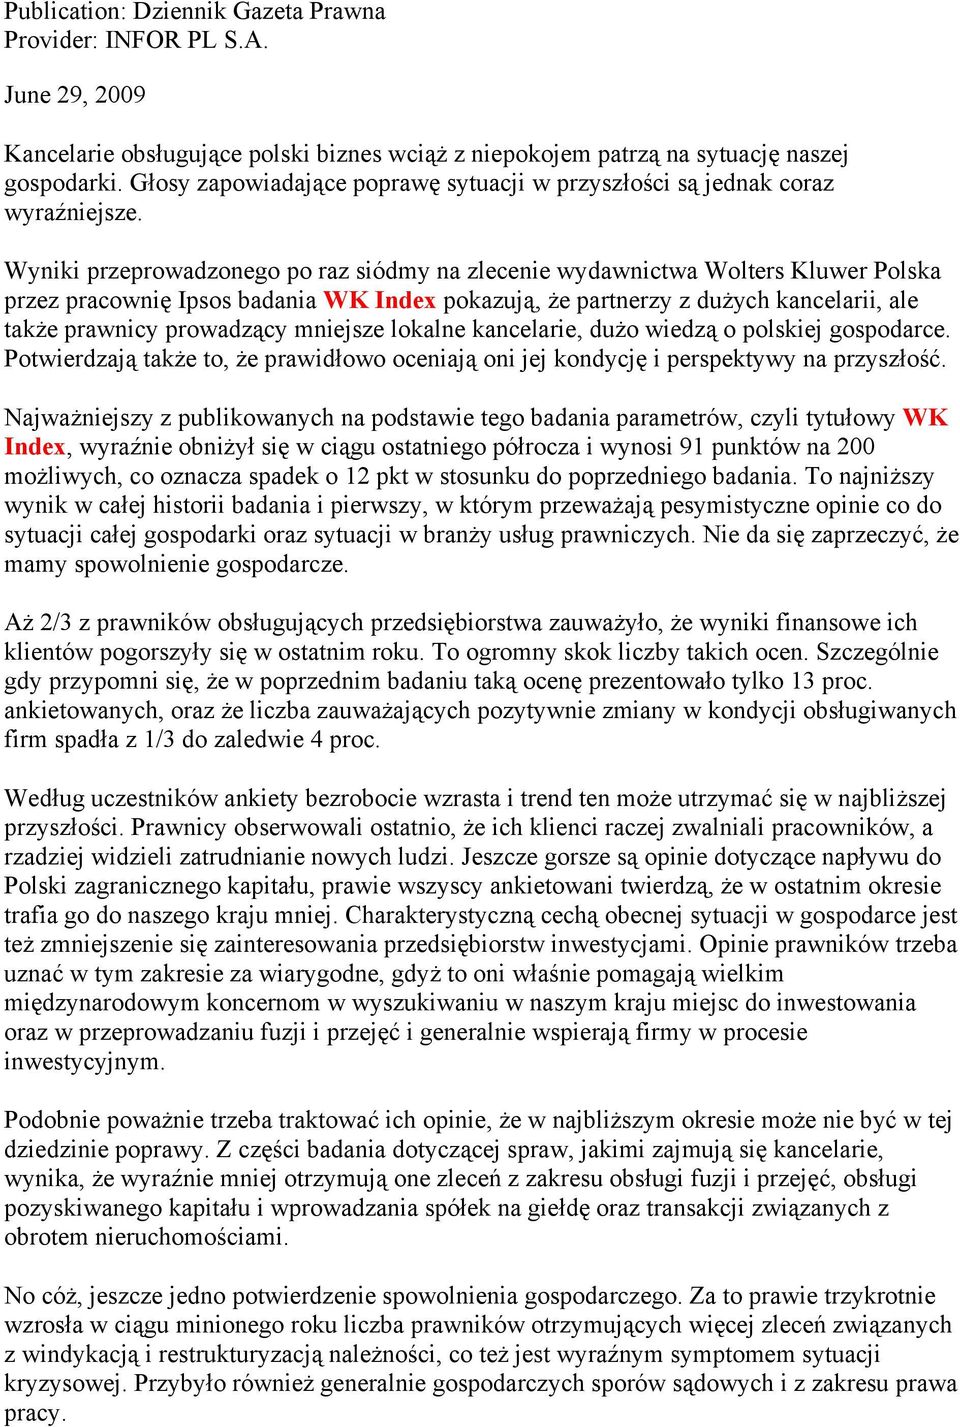 Wyniki przeprowadzonego po raz siódmy na zlecenie wydawnictwa Wolters Kluwer Polska przez pracownię Ipsos badania WK Index pokazują, że partnerzy z dużych kancelarii, ale także prawnicy prowadzący